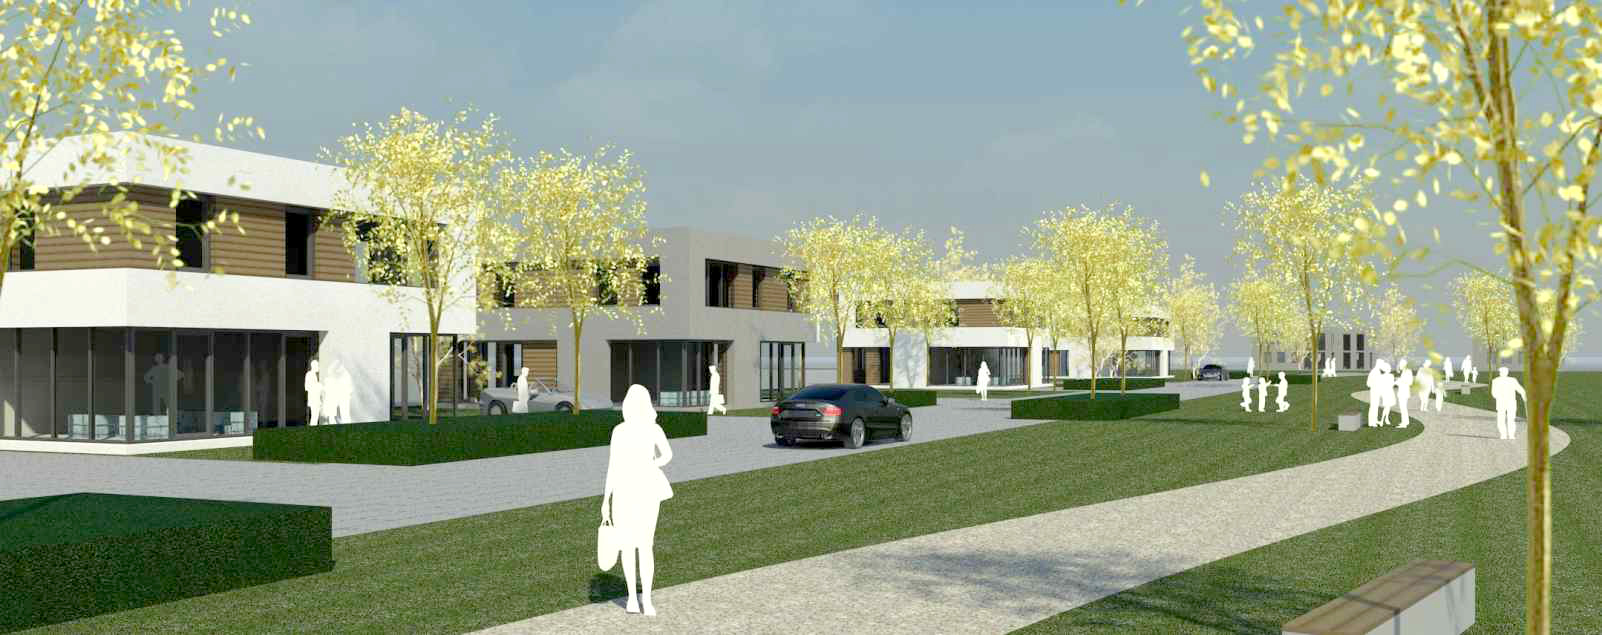 Wohnbebauung Lechtenweg&lt;strong&gt;Lippstadt | Entwurf 2013&lt;/strong&gt;